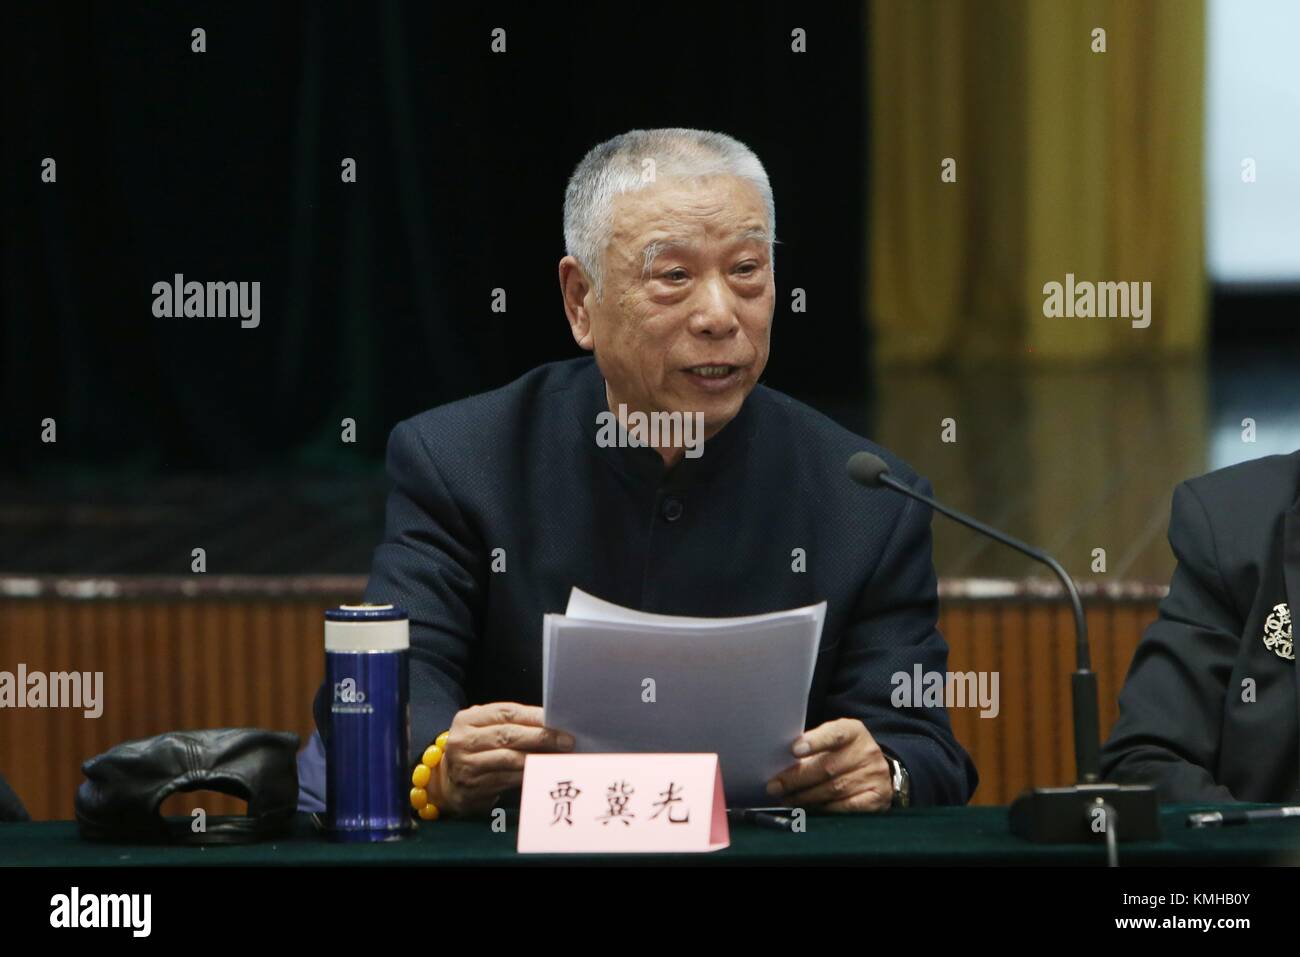 (171213) -- BEIJING, 13 décembre 2017 (Xinhua) -- Un participant parle au cours d'un symposium marquant le 100e anniversaire de la naissance de maître Hou Baolin diaphonie chinois à Beijing, capitale de la Chine, 13 décembre 2017. (Xinhua/Zheng Huansong) (lb) Banque D'Images